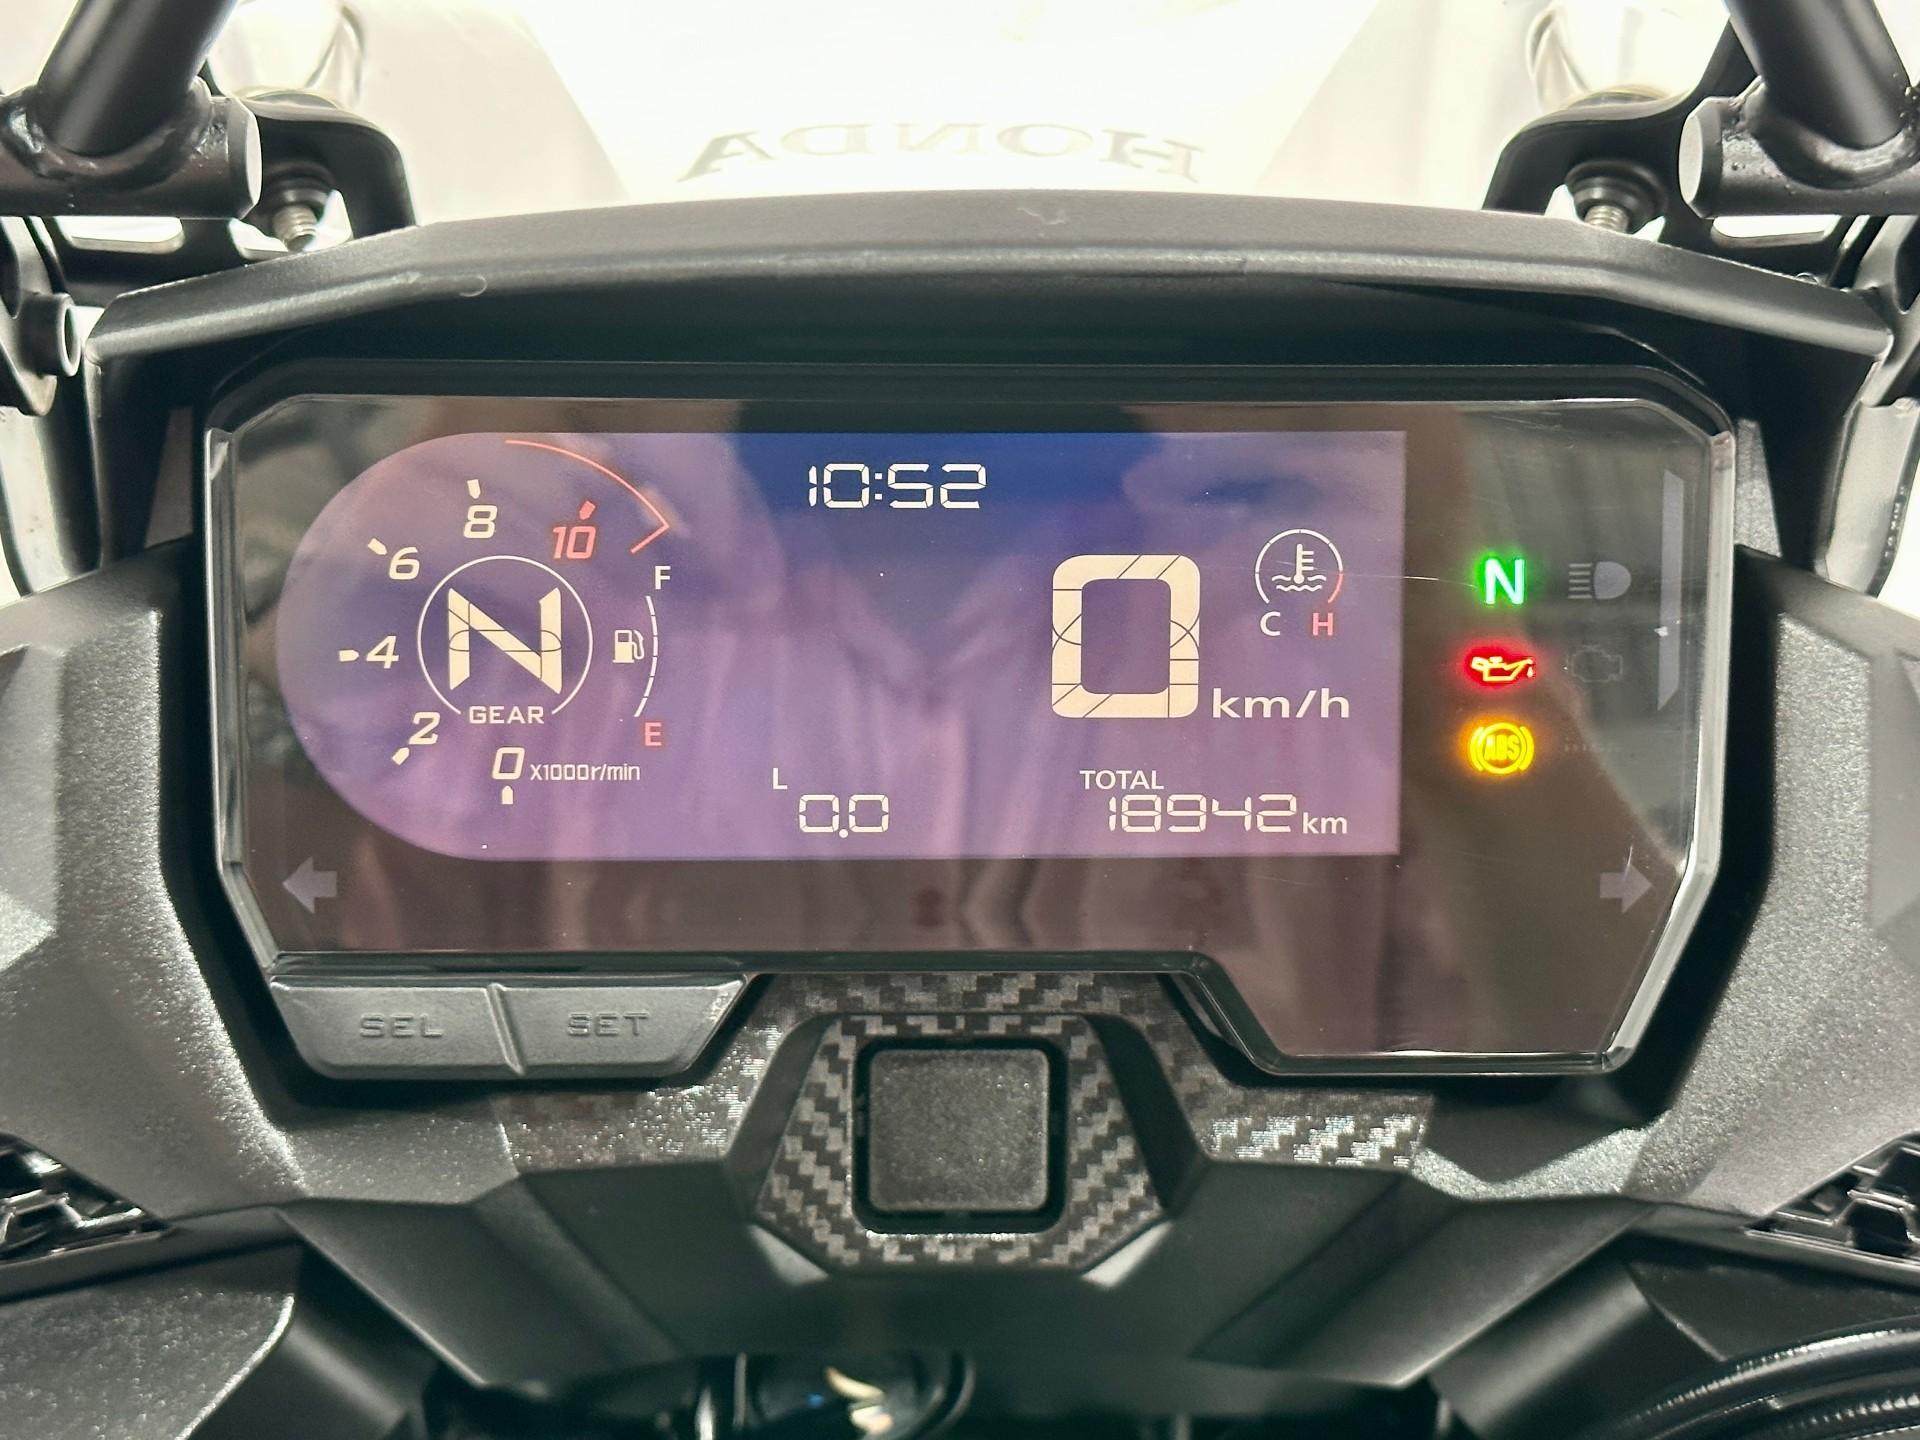 Honda Motos CB 500 X ABS 2021